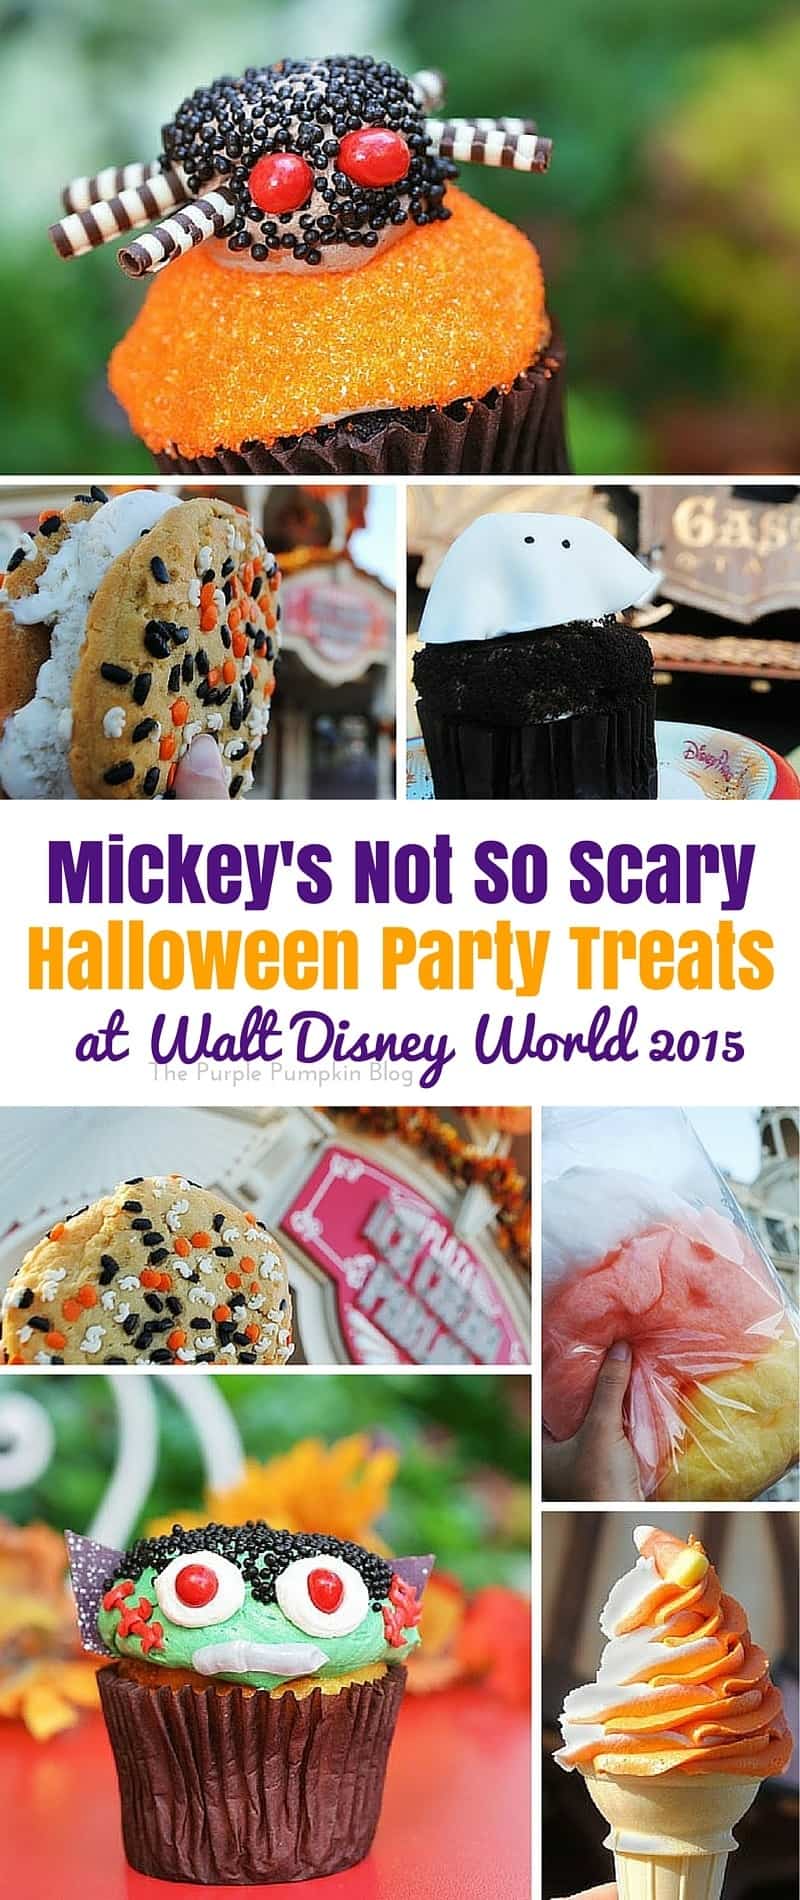 Mickey's Not So Scary Halloween Party Treats at Walt Disney World 2015